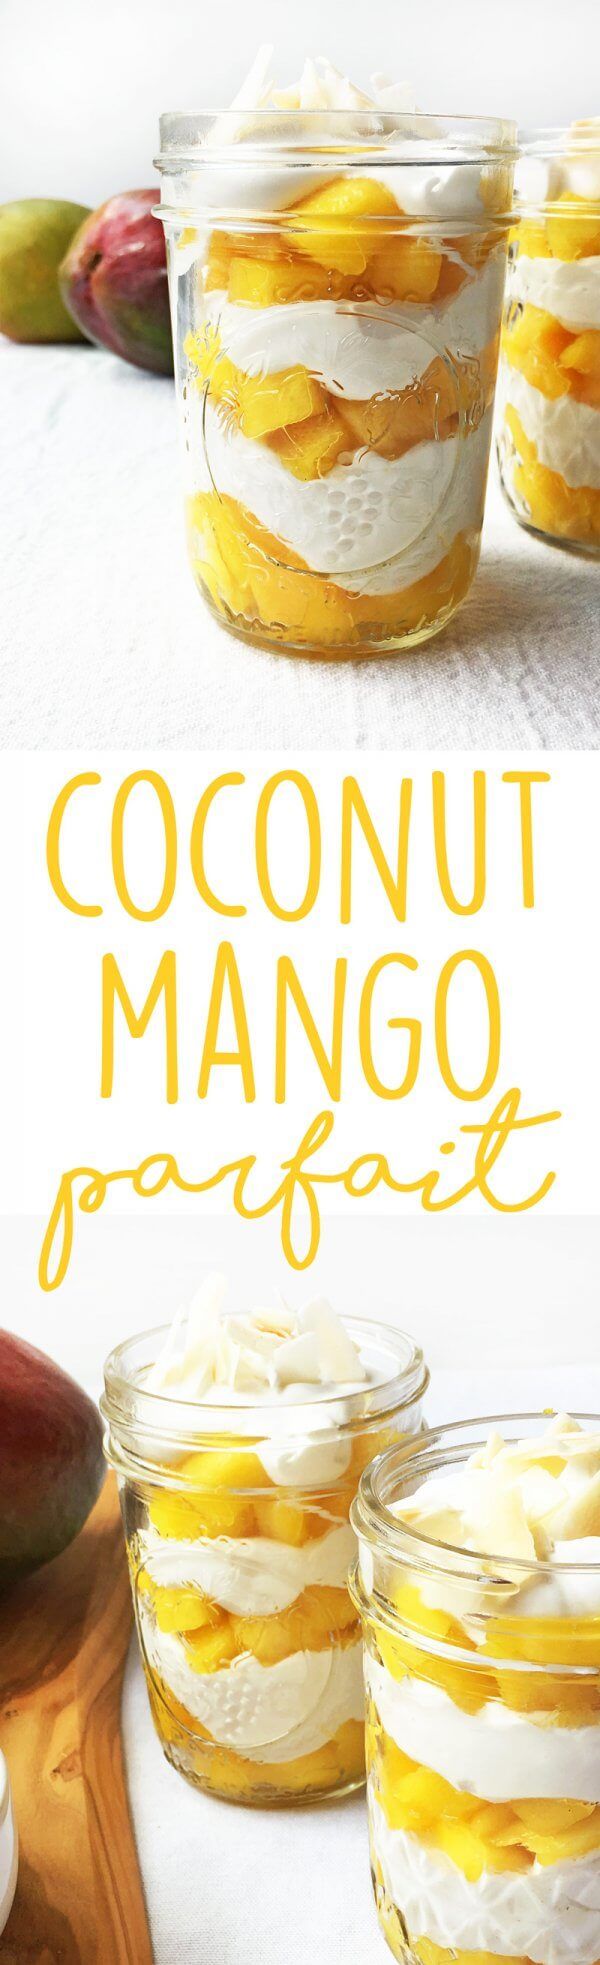 Coconut Mango Parfait